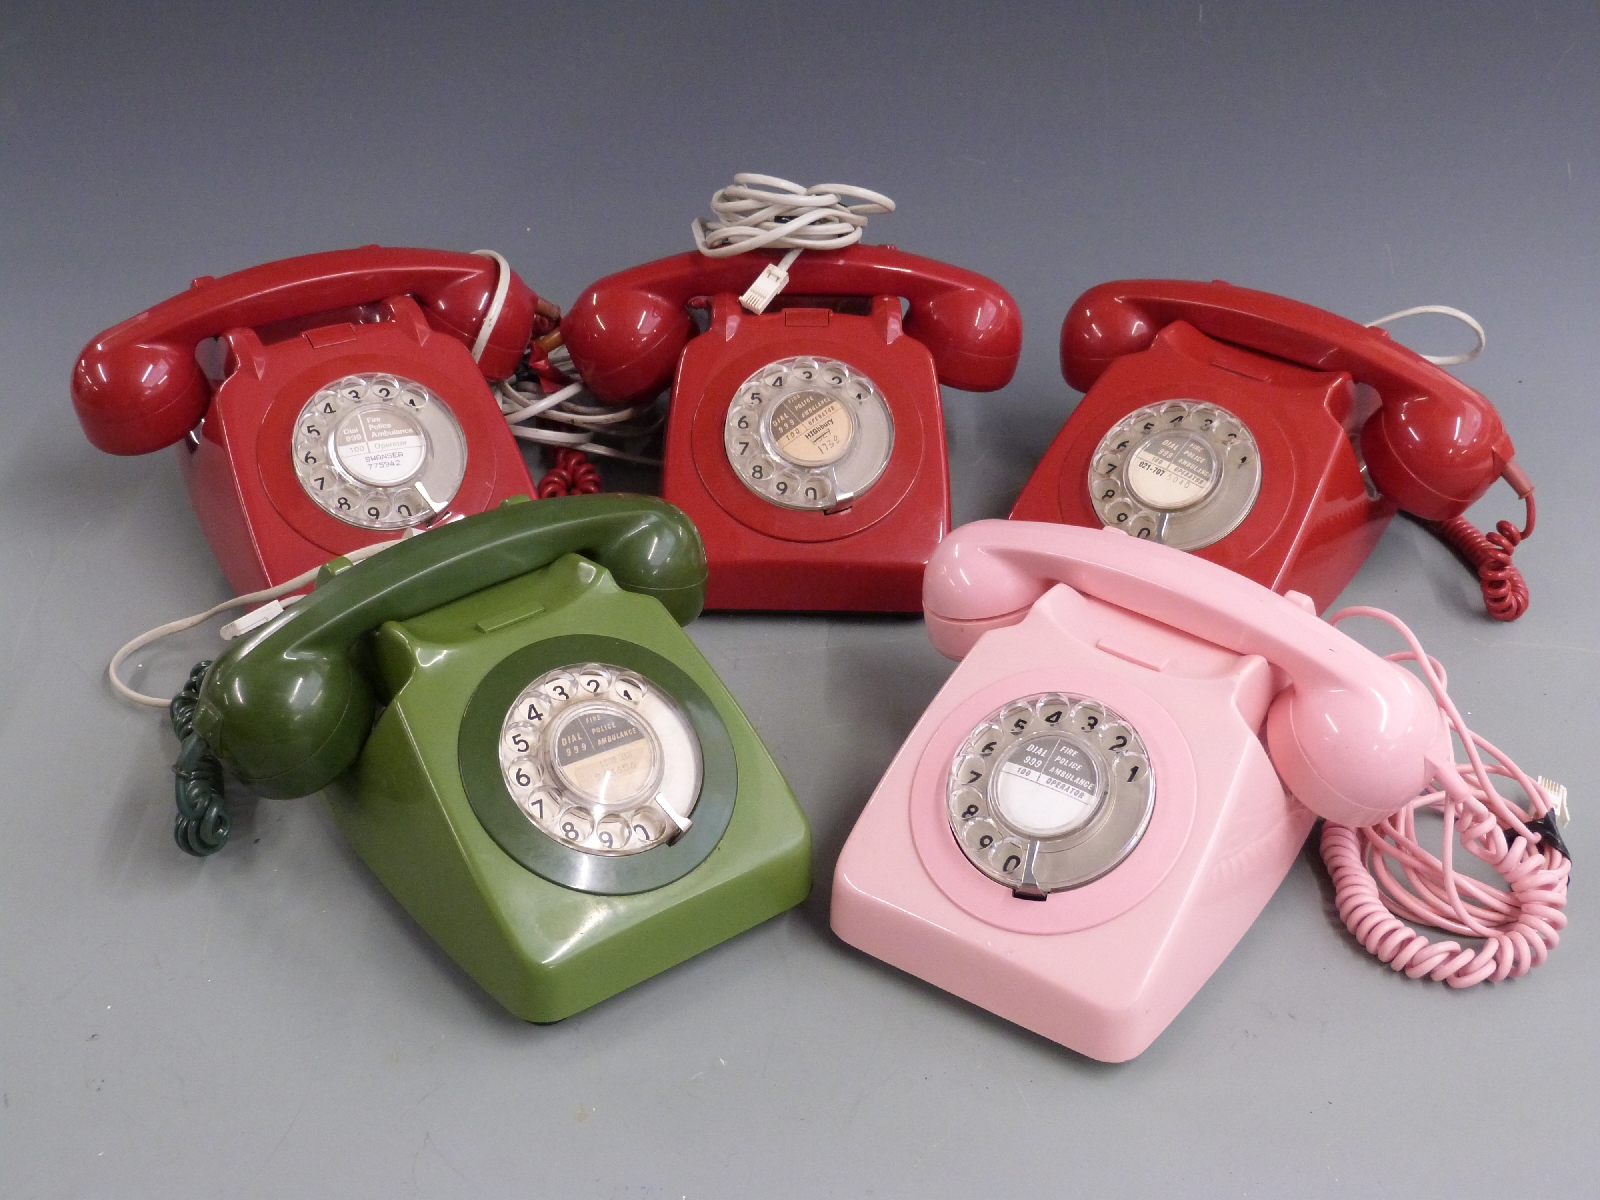 Five retro coloured telephones